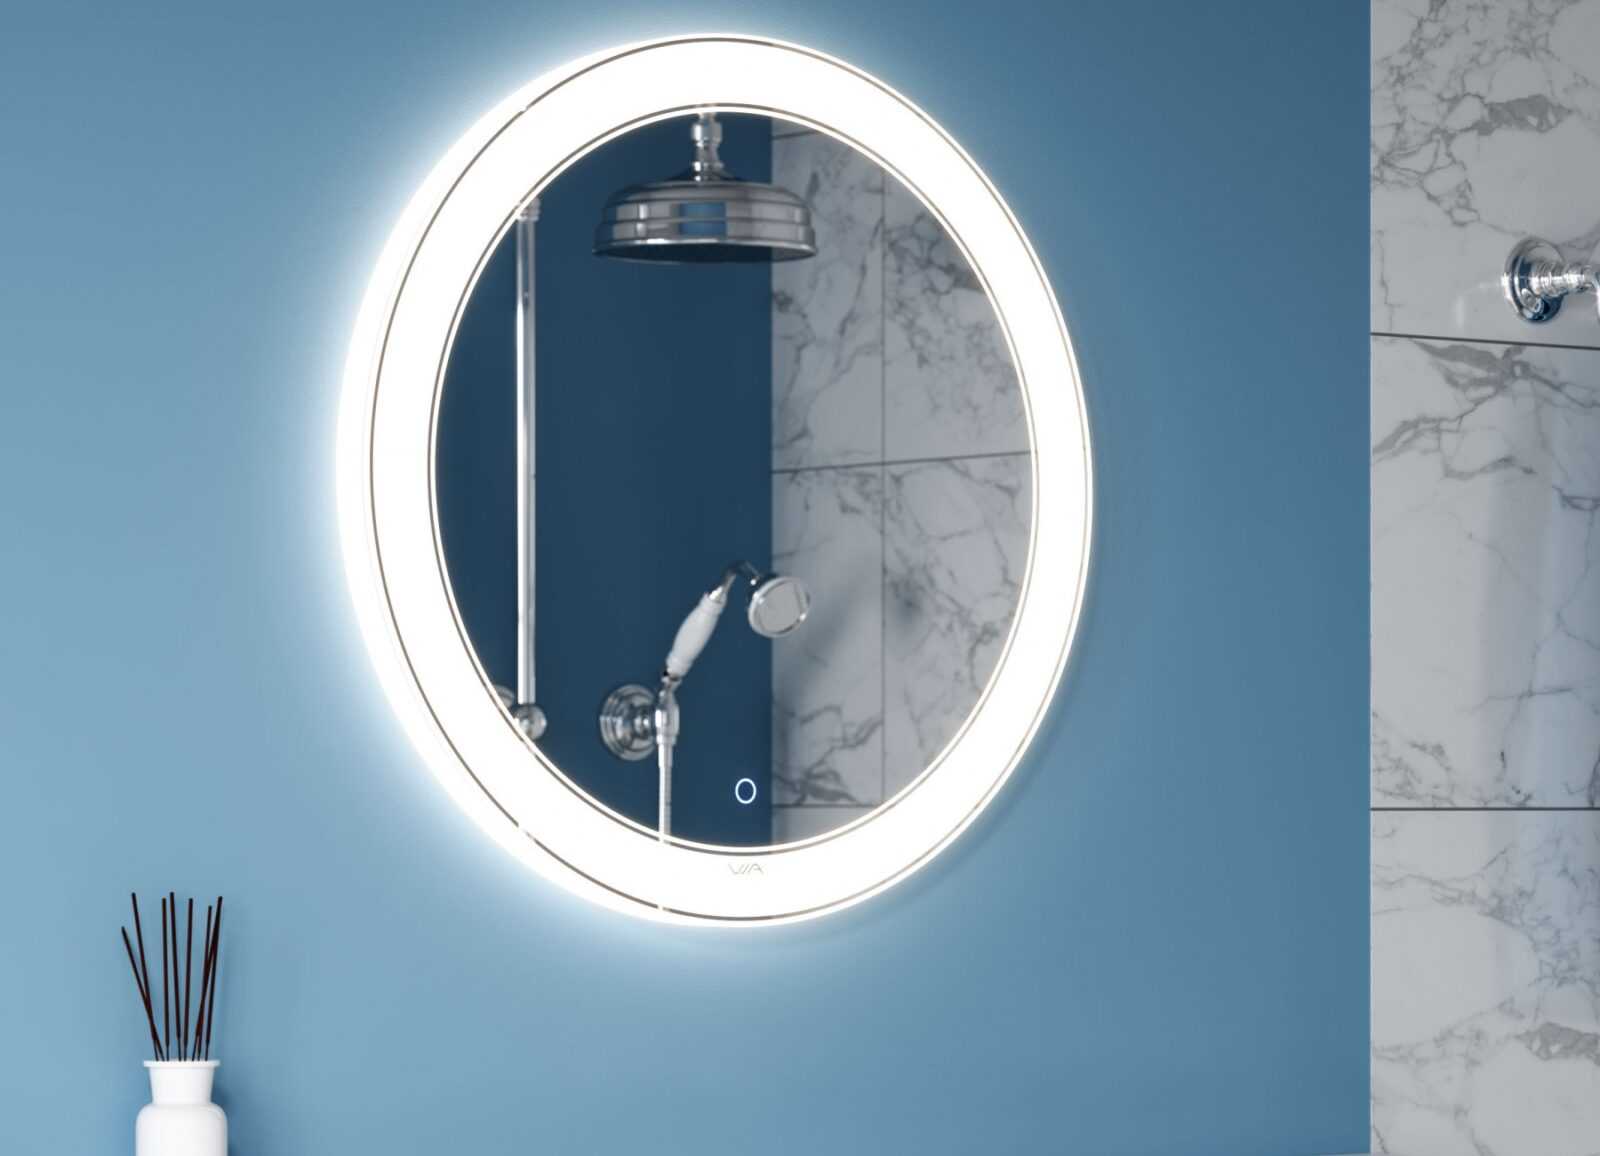 Виды подсветки для зеркала в ванной, варианты установки и подключения 33 - ДиванеТТо